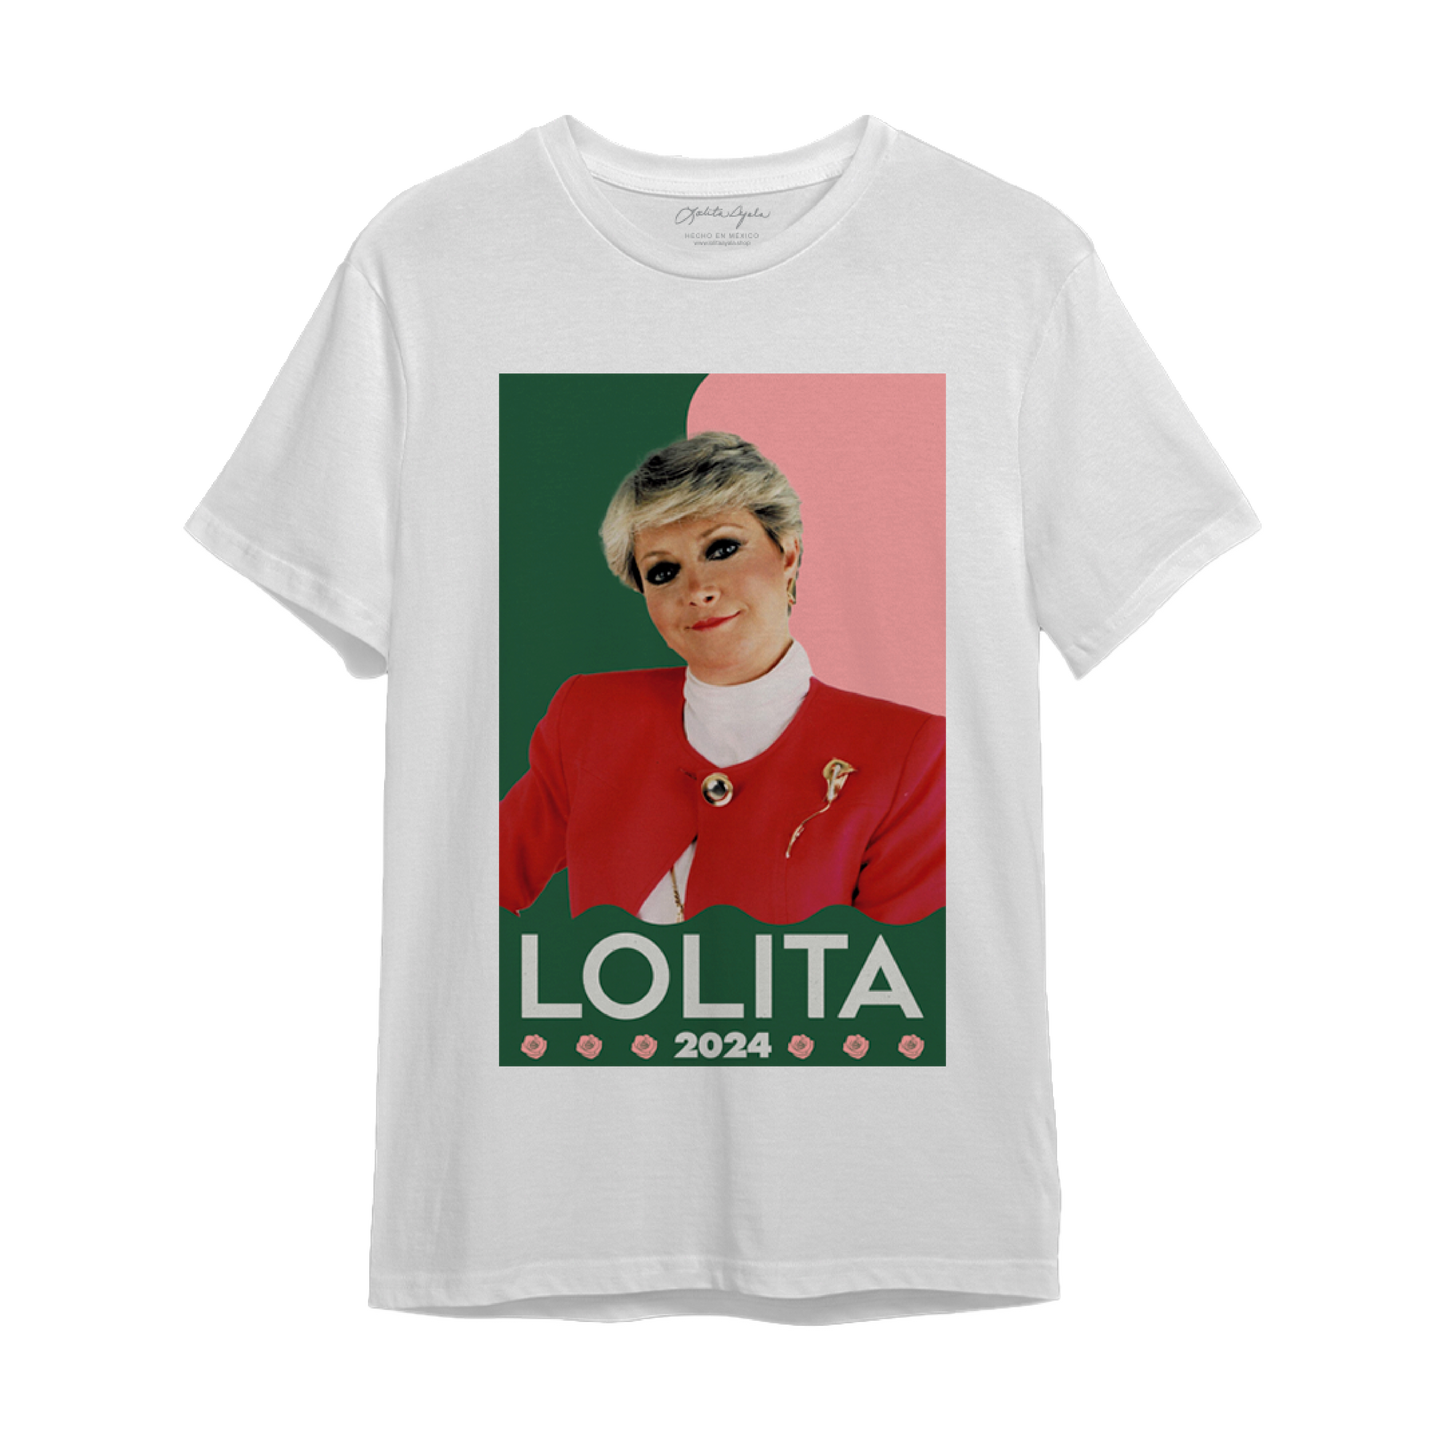 Lolita 2024 | NUEVA EDICIÓN